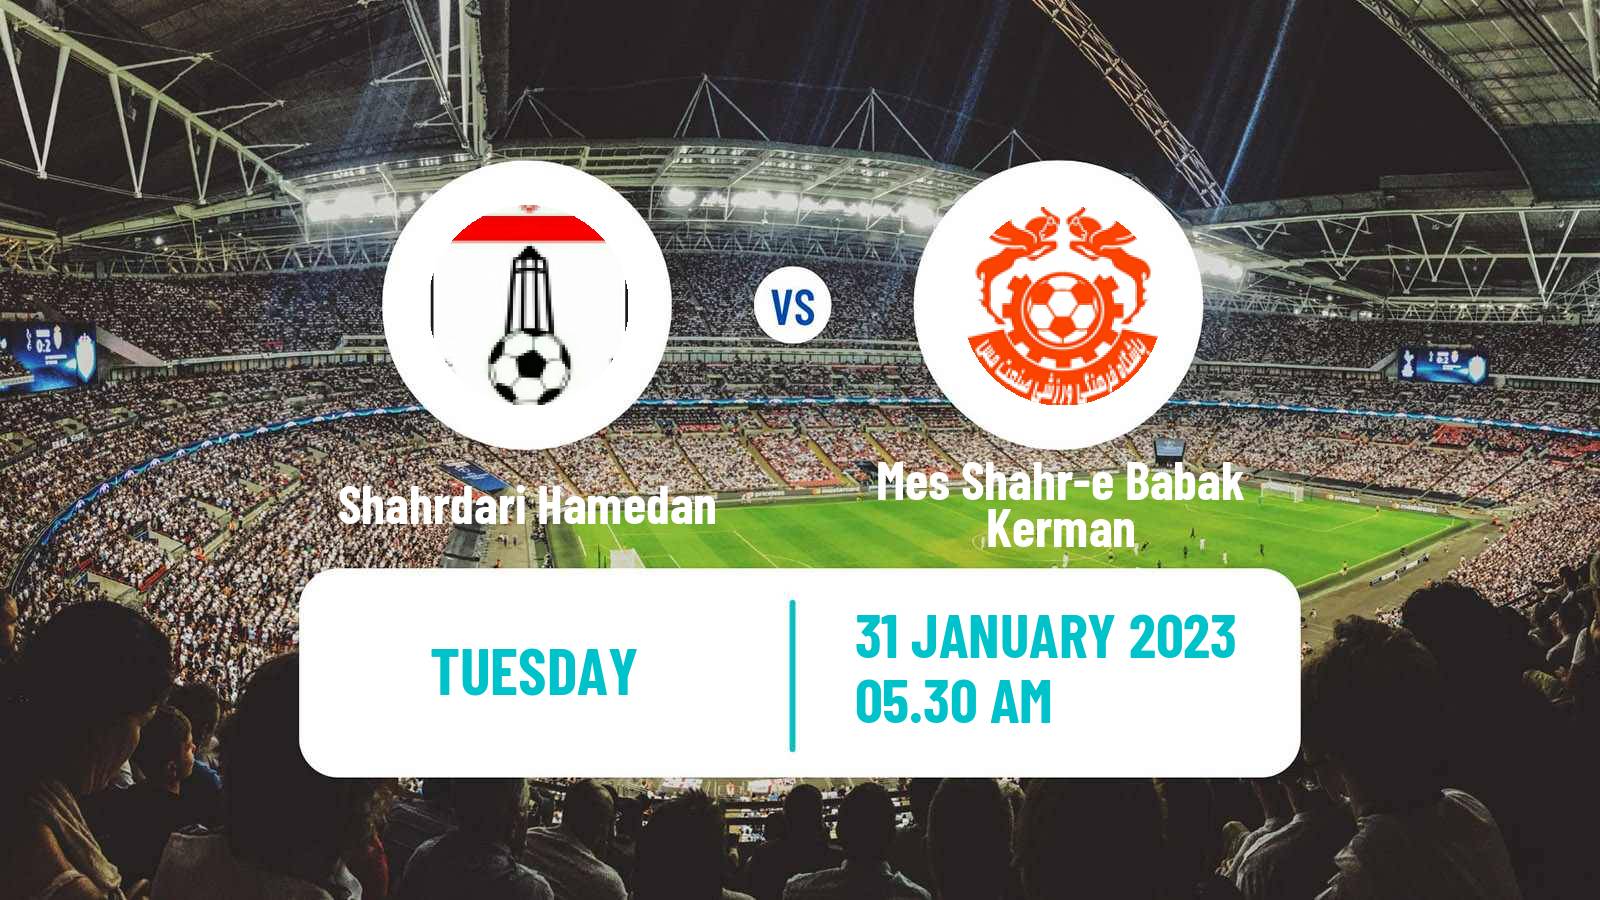 Soccer Iran Division 1 Shahrdari Hamedan - Mes Shahr-e Babak Kerman